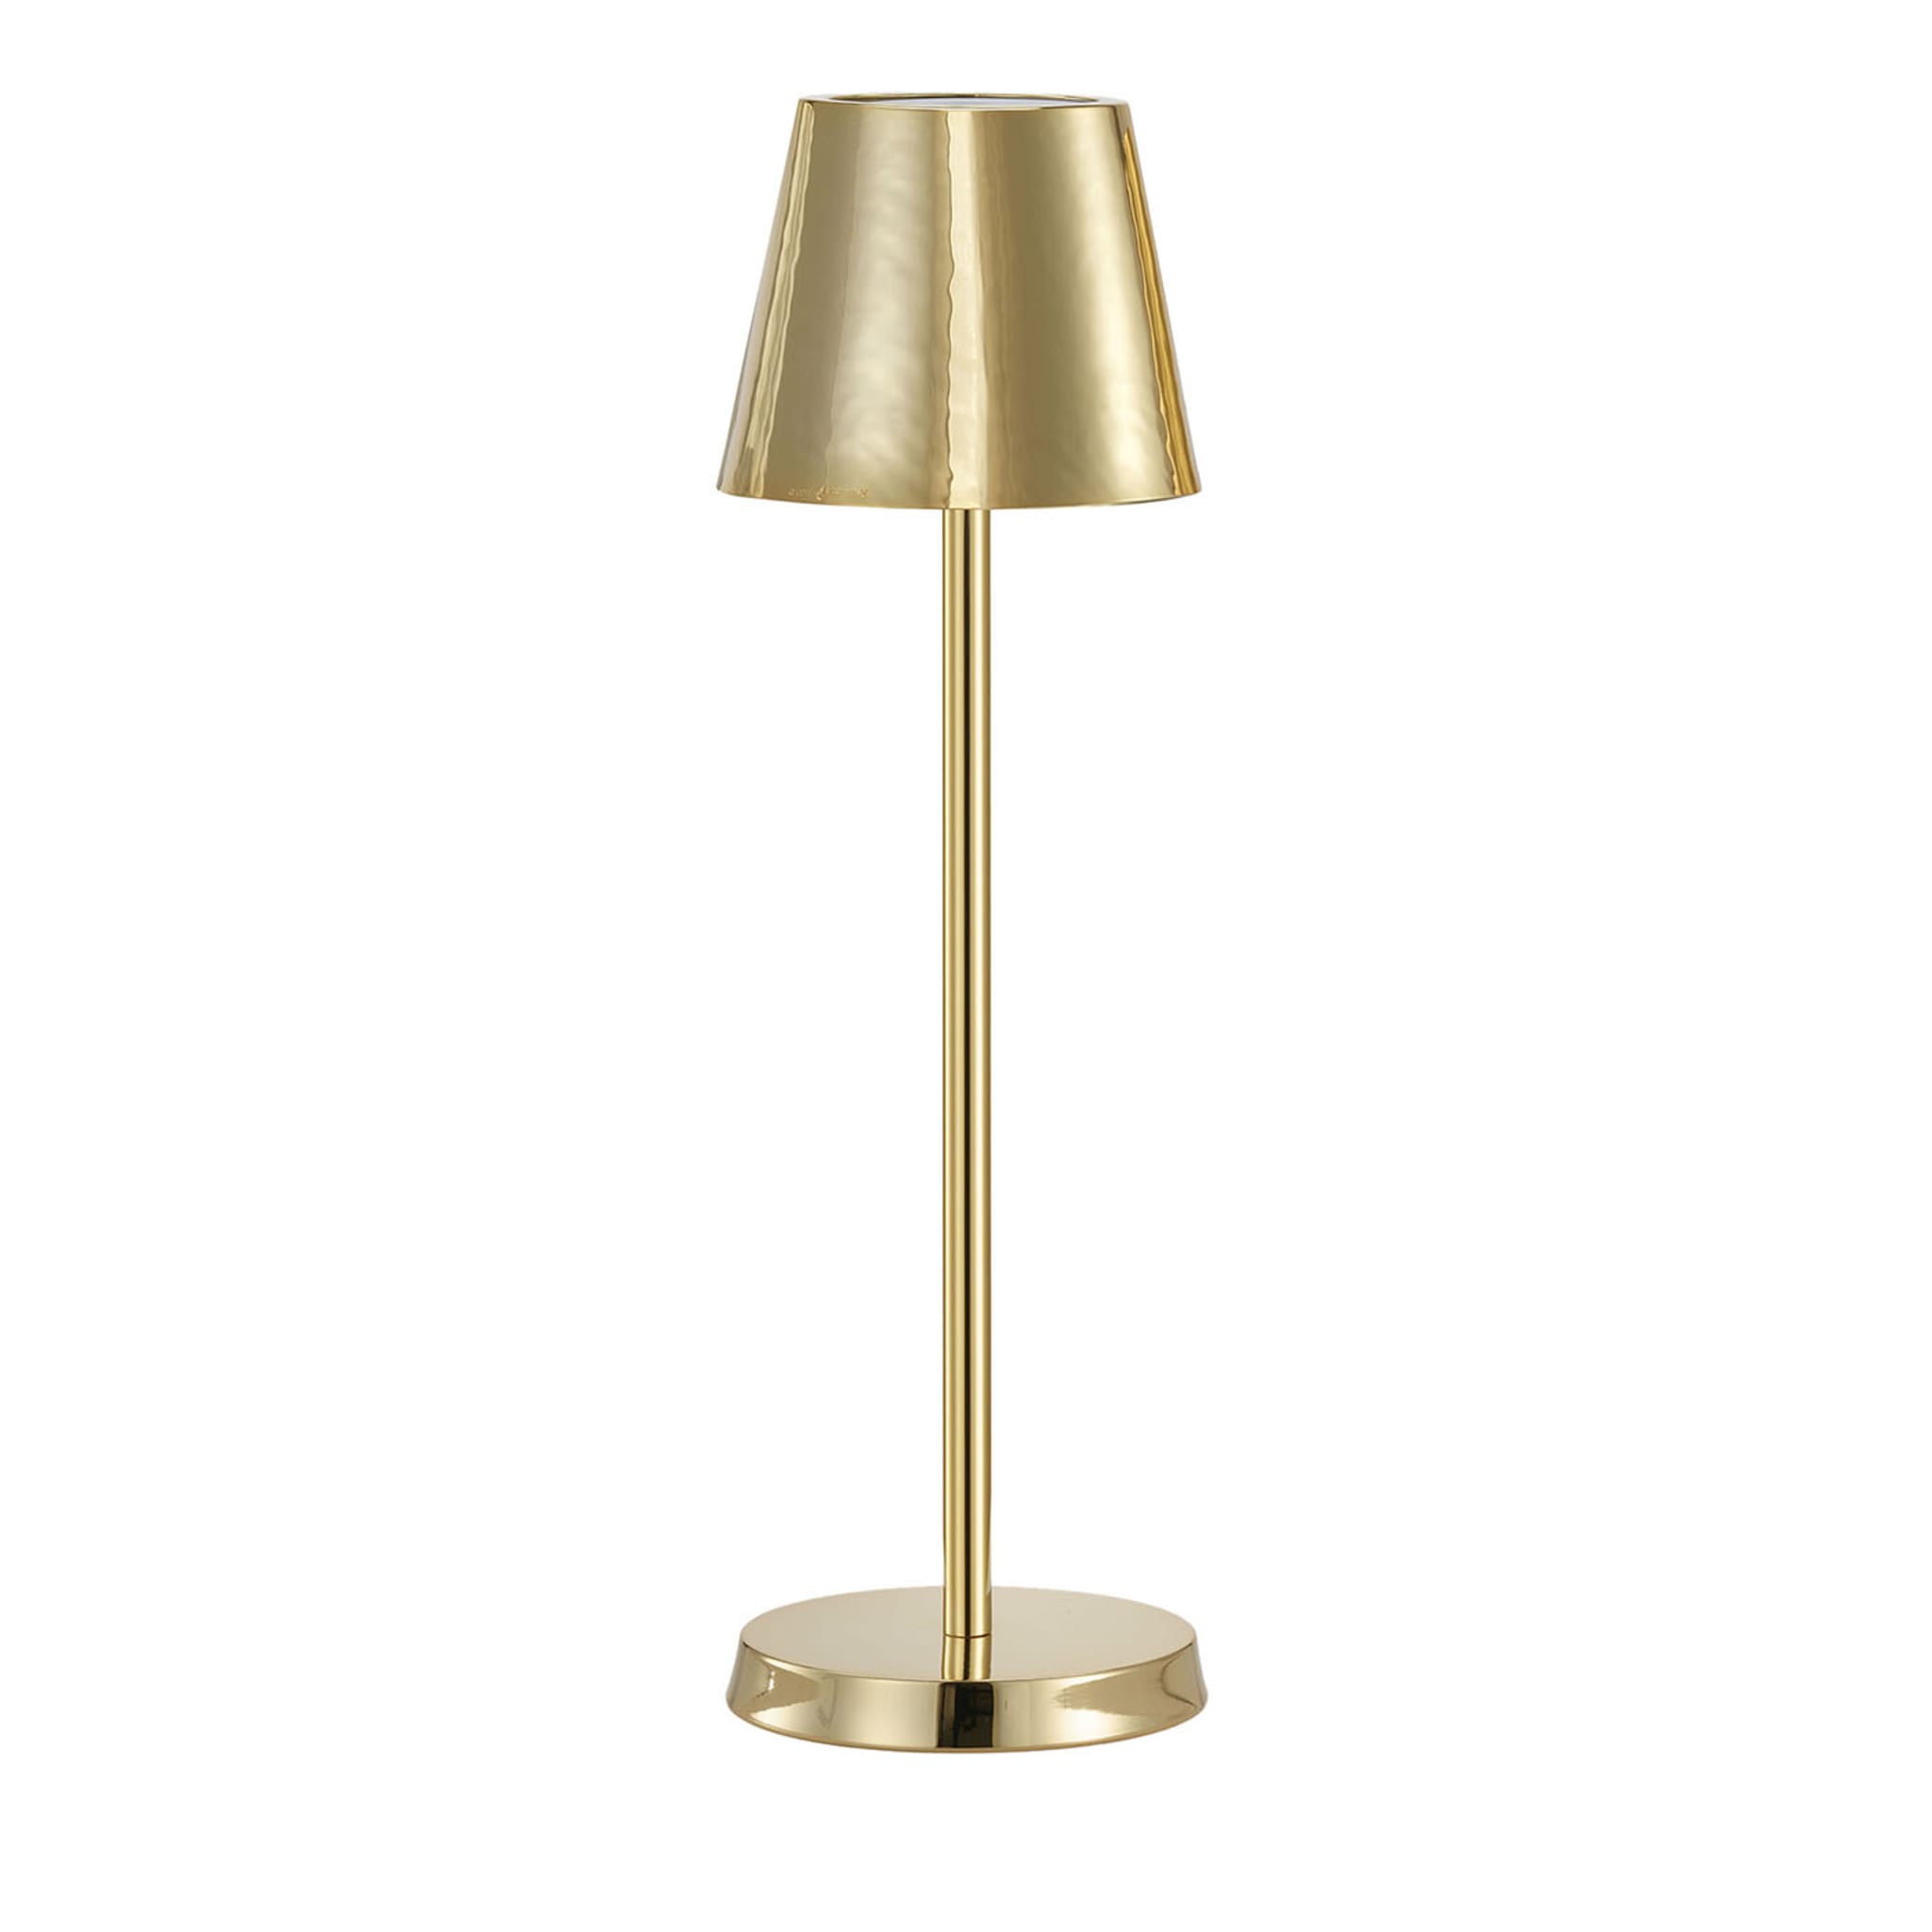 Golden Lamp #3 by Itamar Harari - Main view